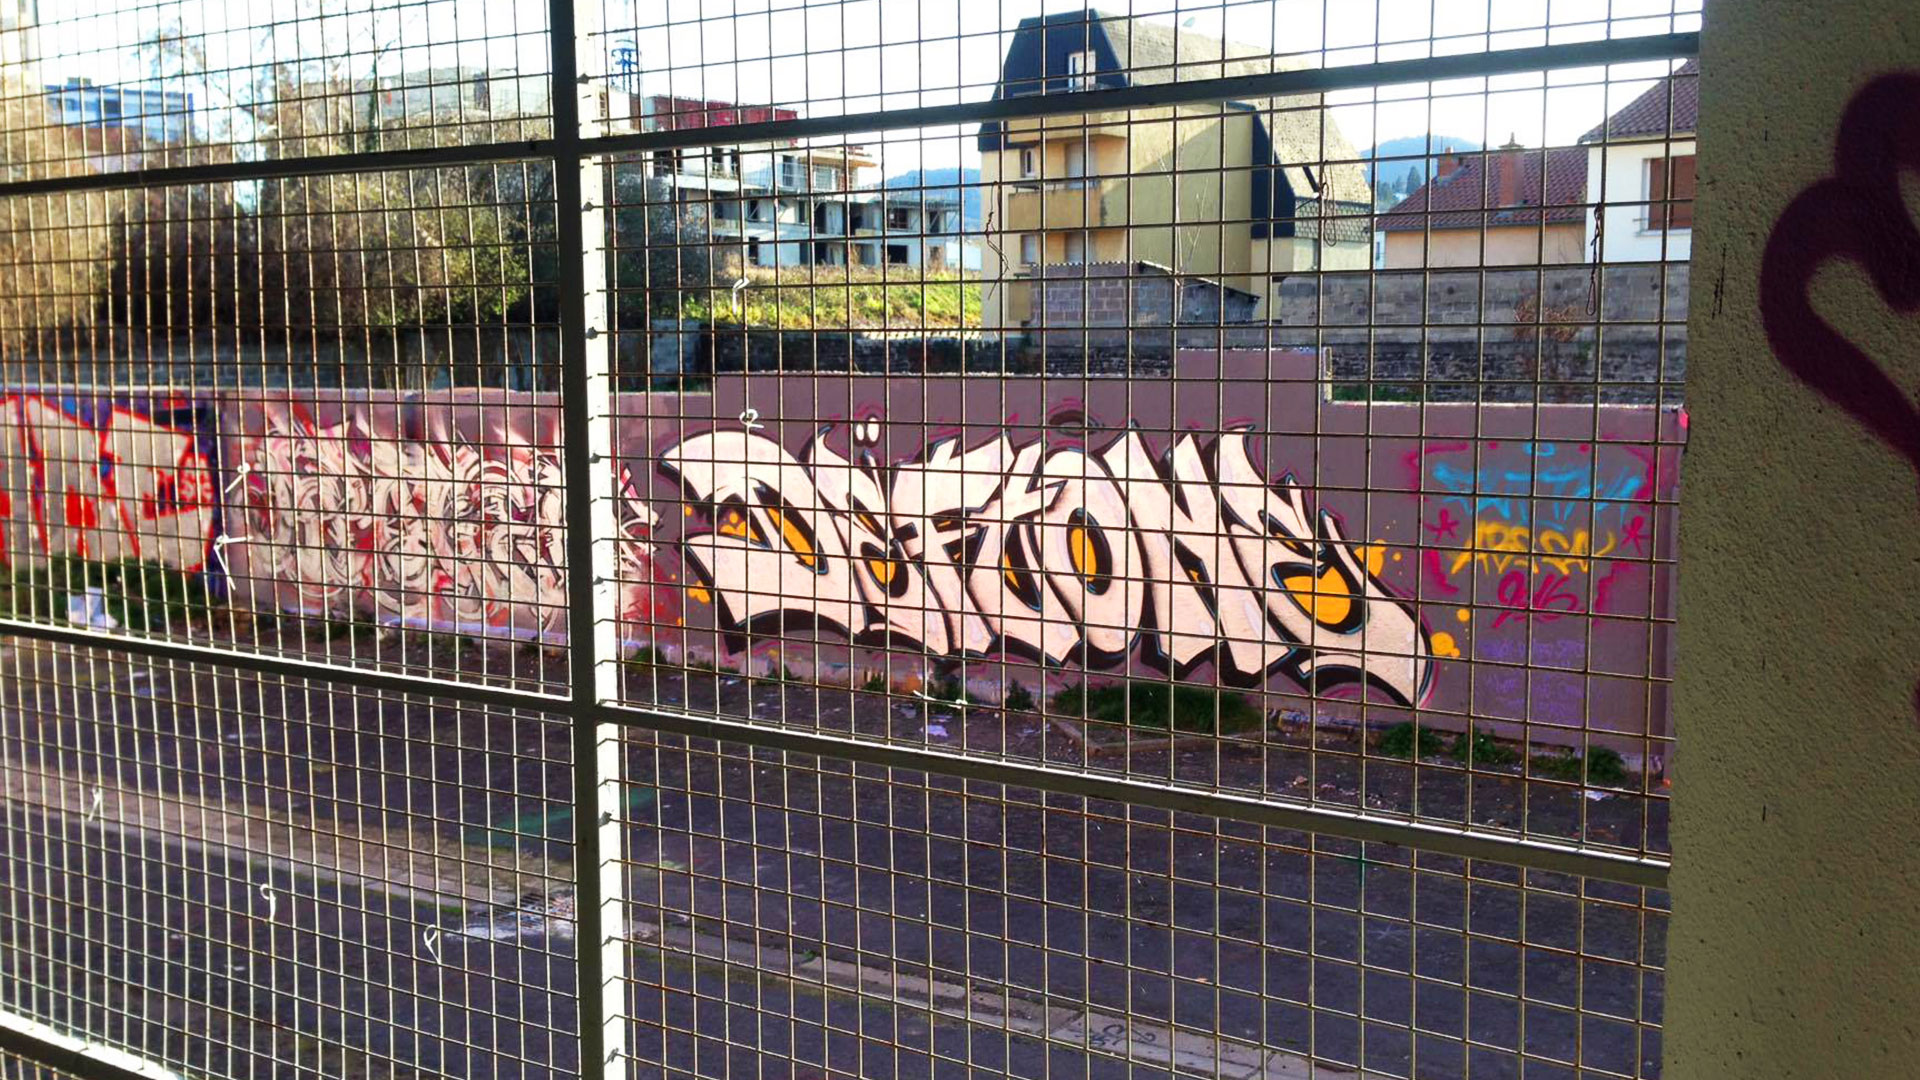 deft_graffiti_ensacf